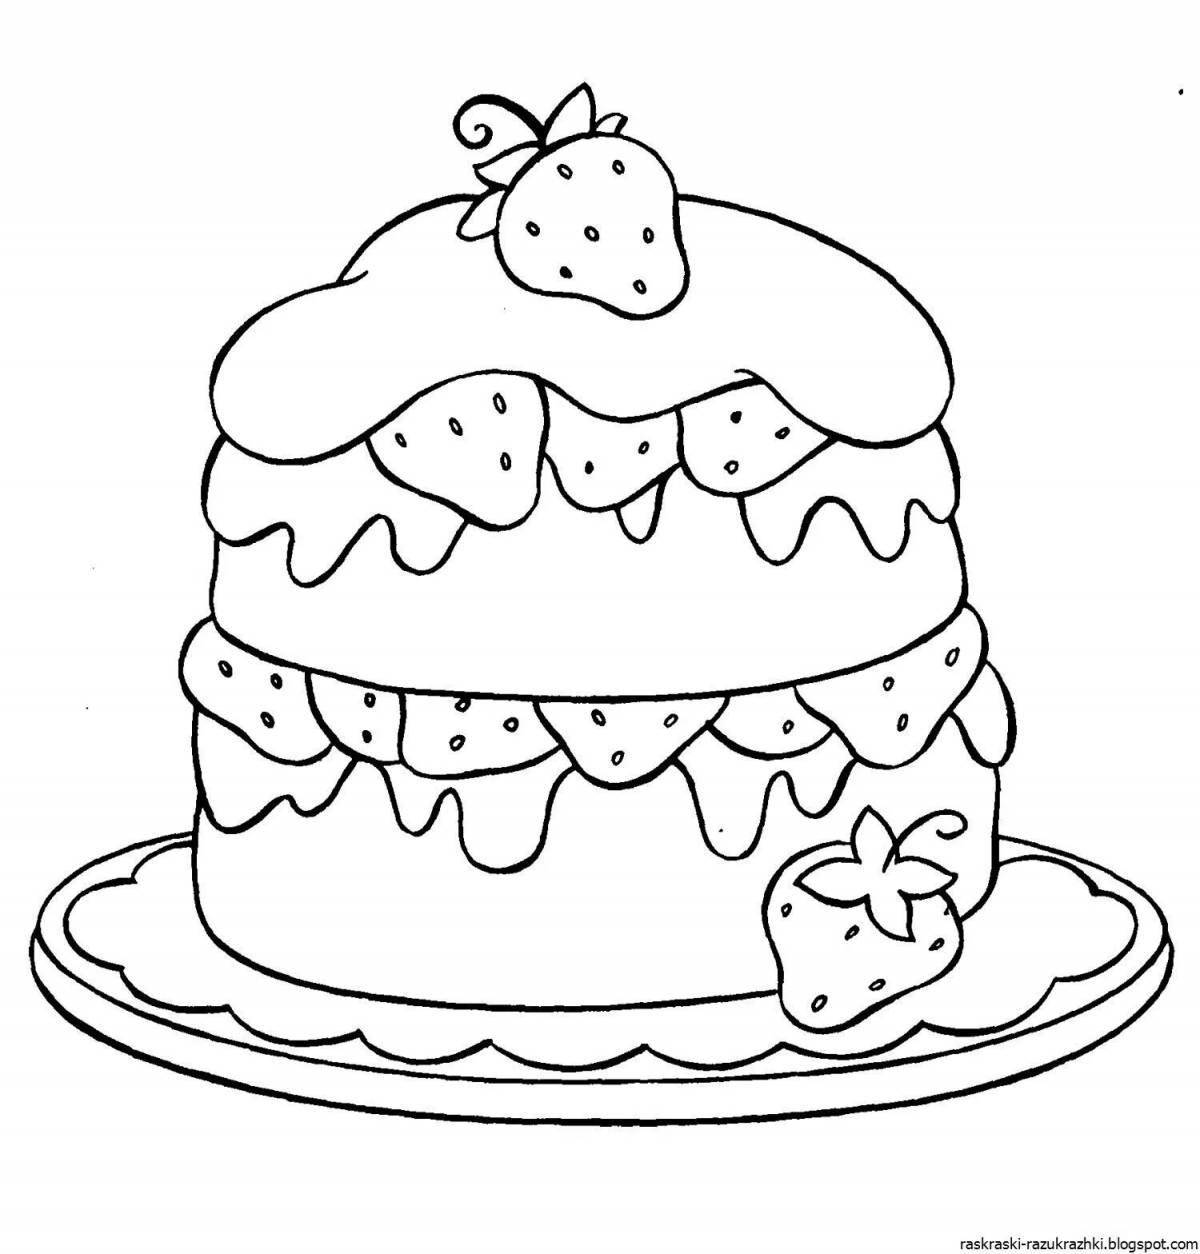 Раскраска сладкий торт для детей